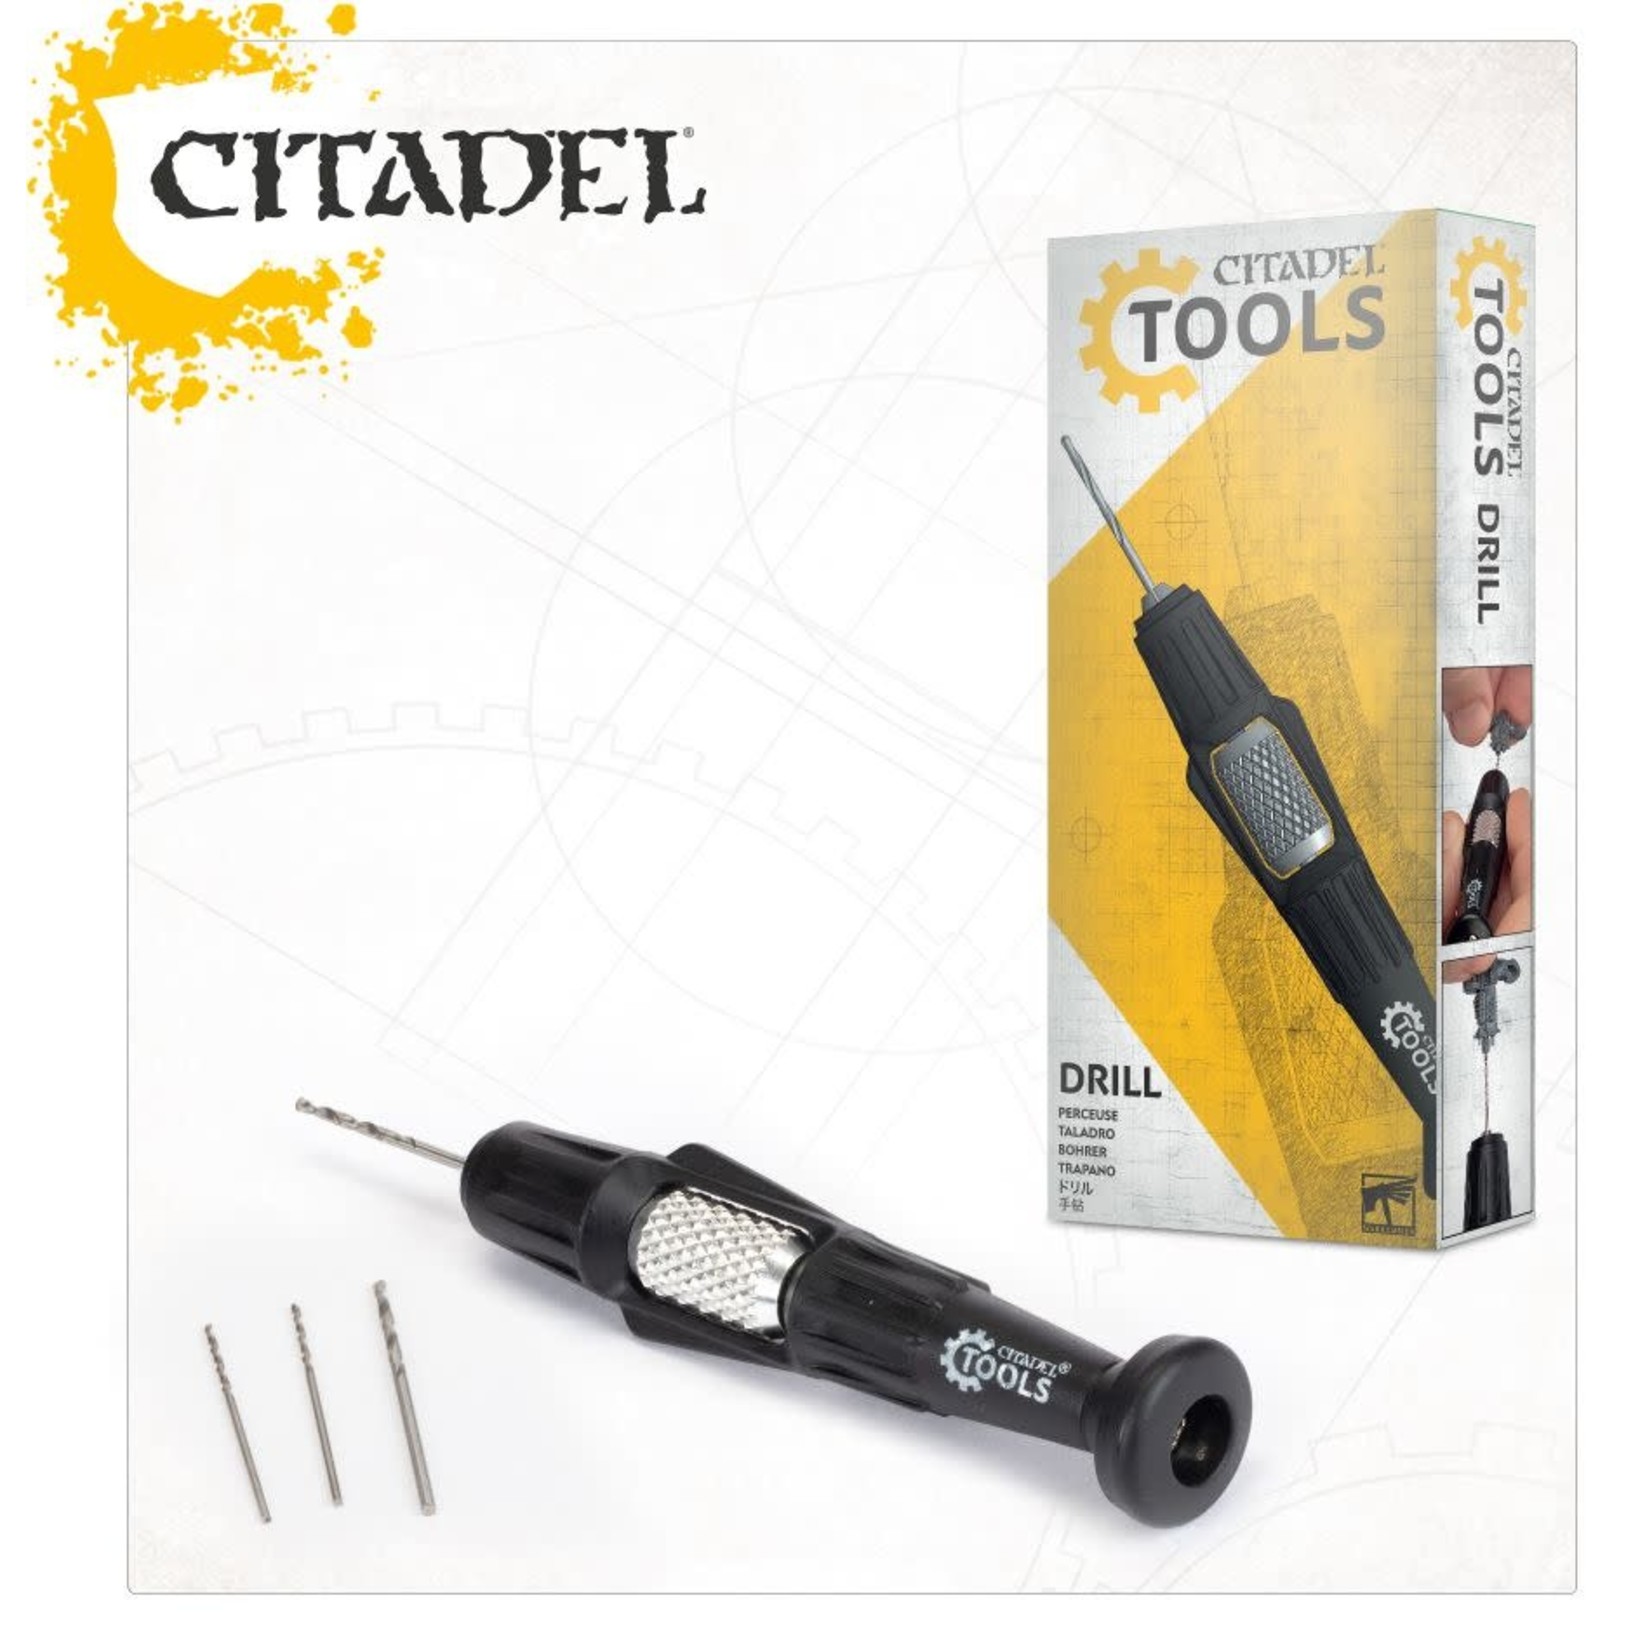 Citadel Tools Drill